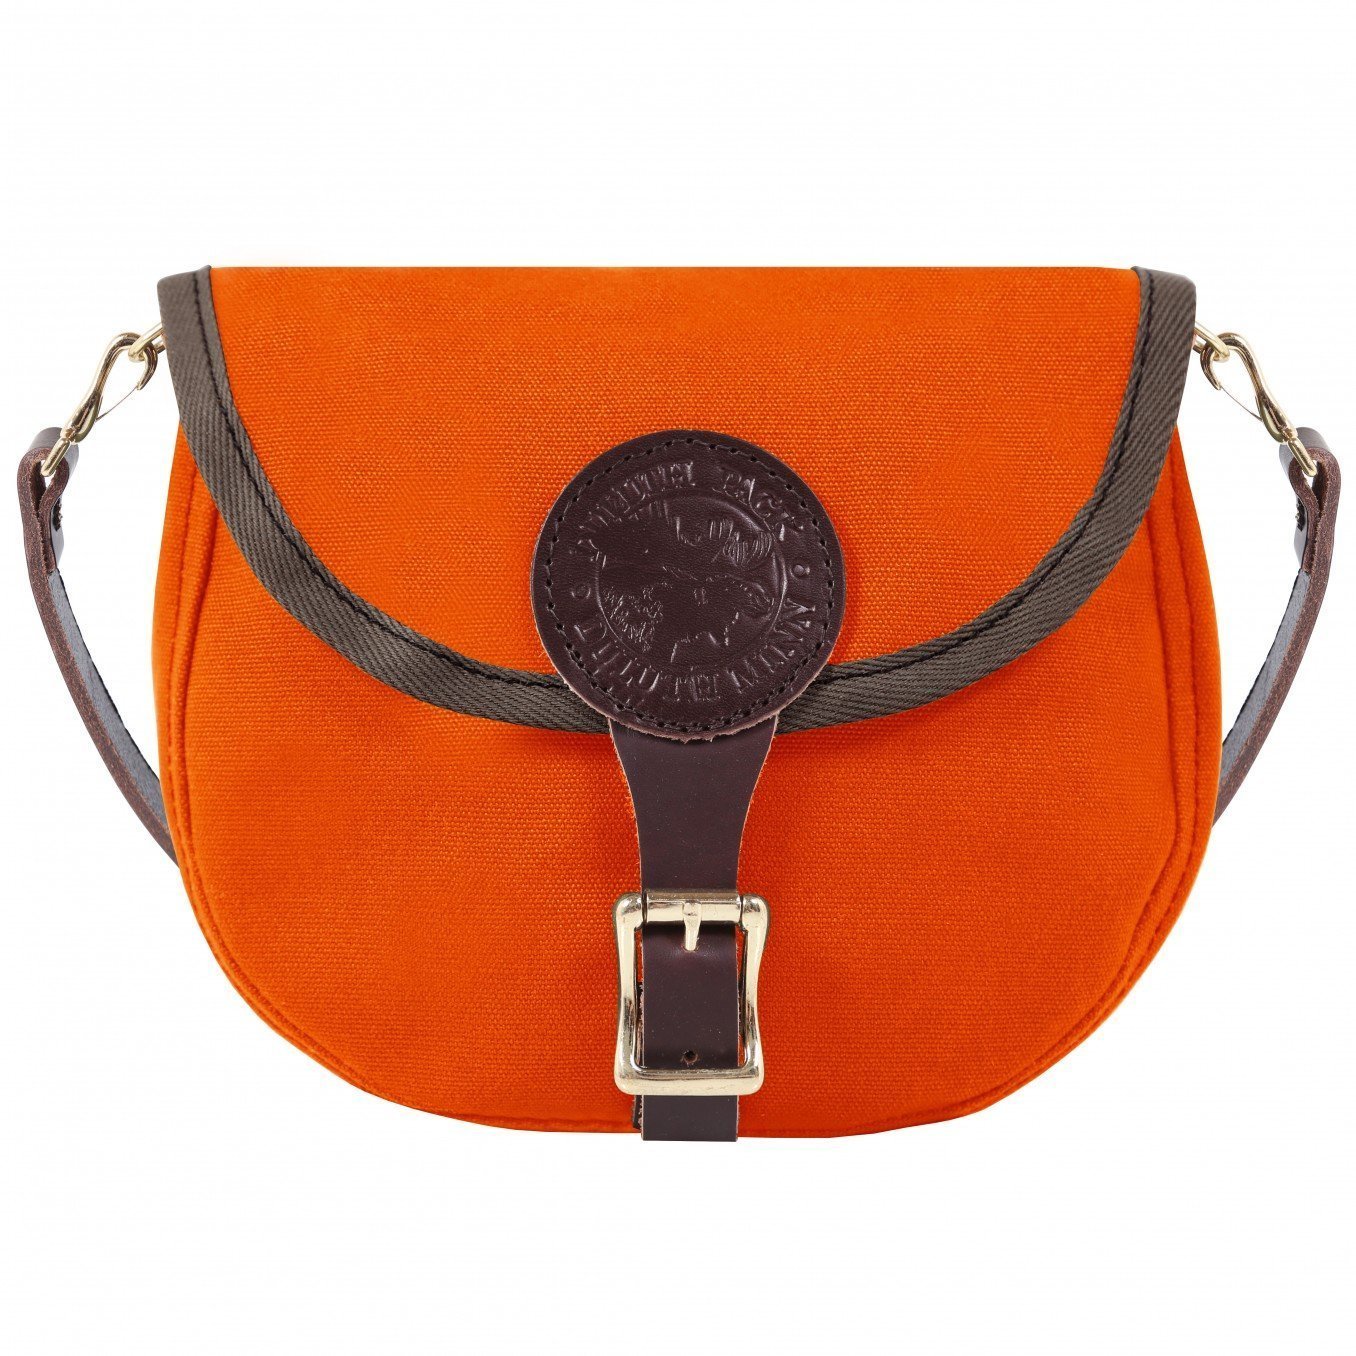 Top-handle Bags | Crossbody Bags | Shoulder Bags | Handbags - Women Canvas  Zipper Shoulder - Aliexpress